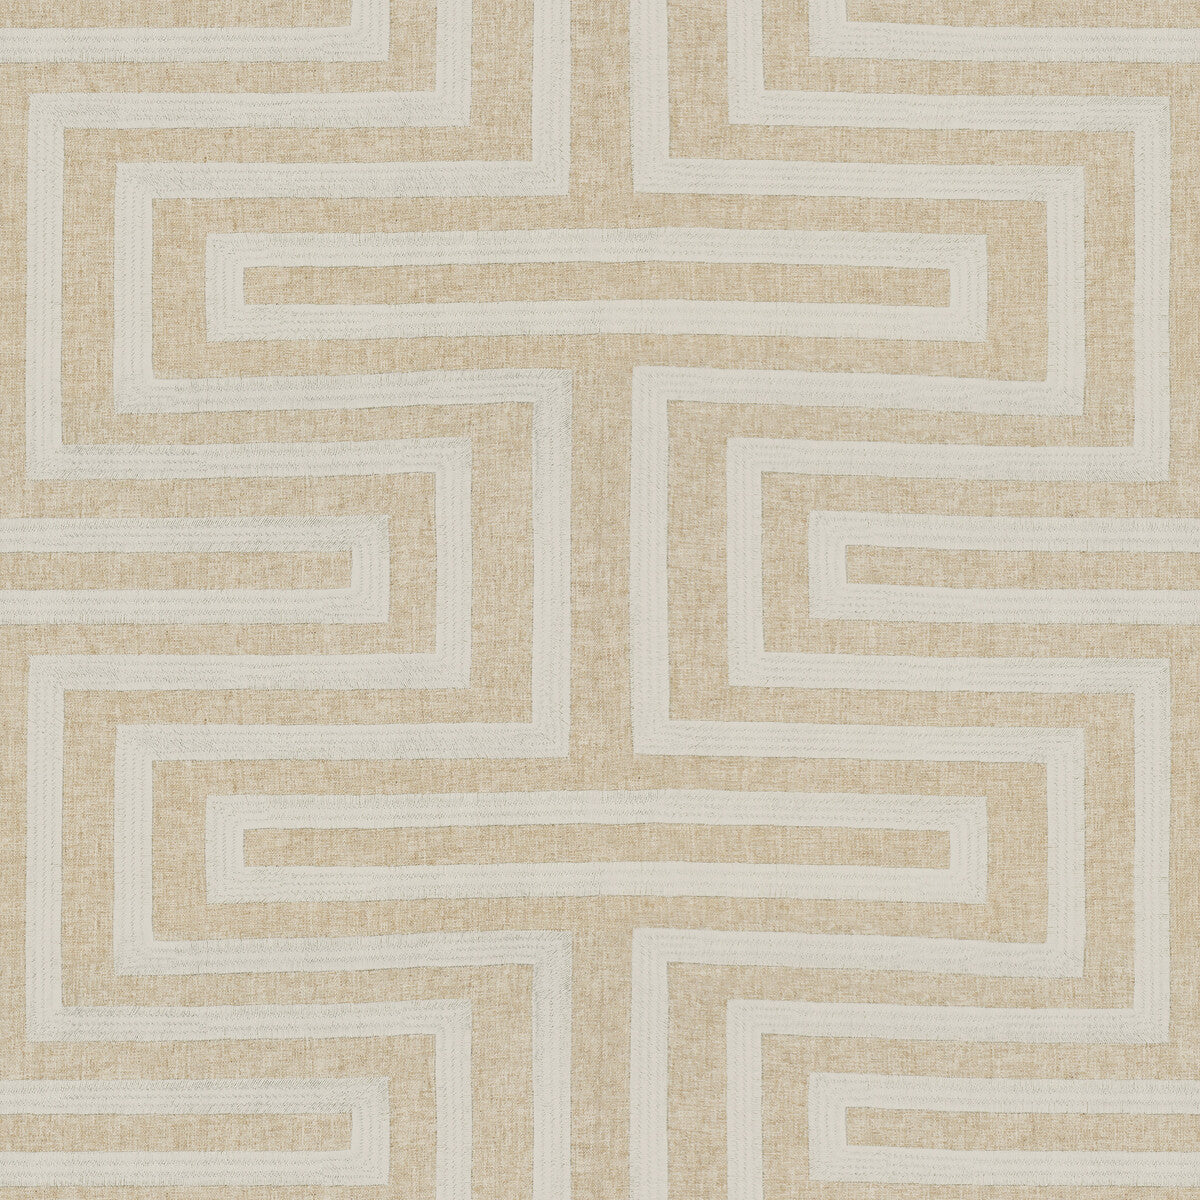 Kravet Design fabric in 34417-16 color - pattern 34417.16.0 - by Kravet Design